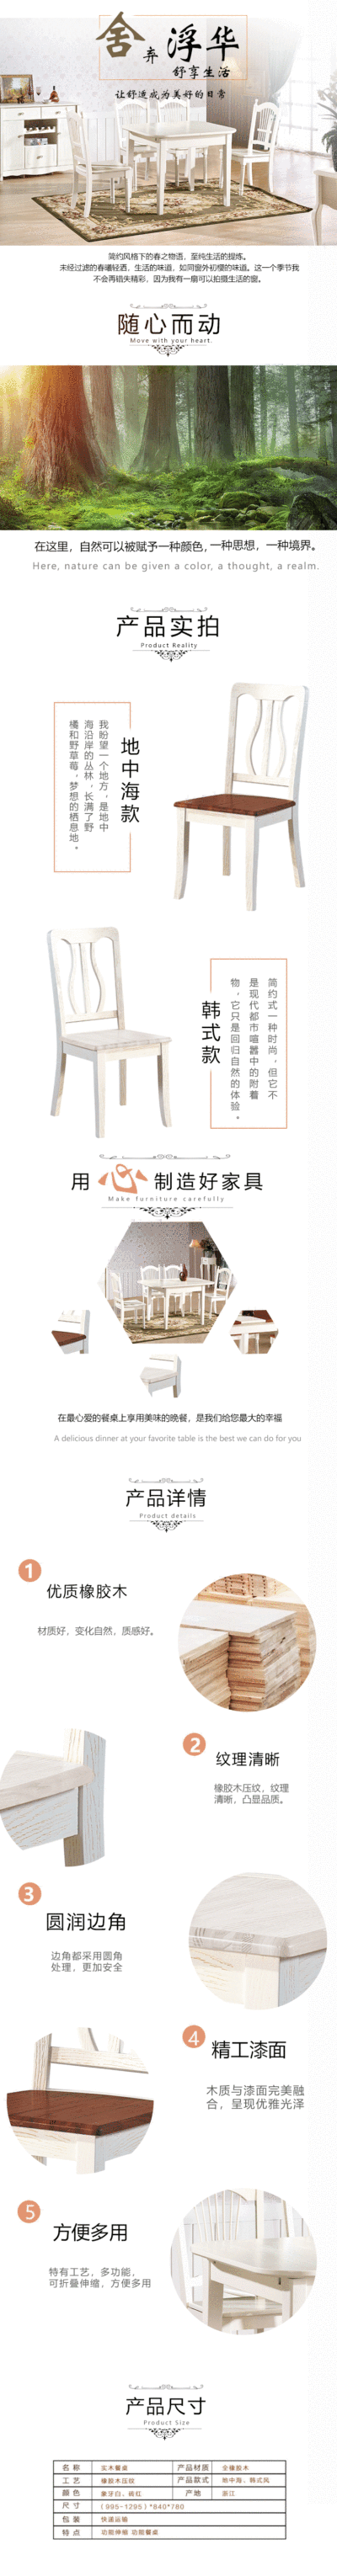 家具淘宝详情页设计